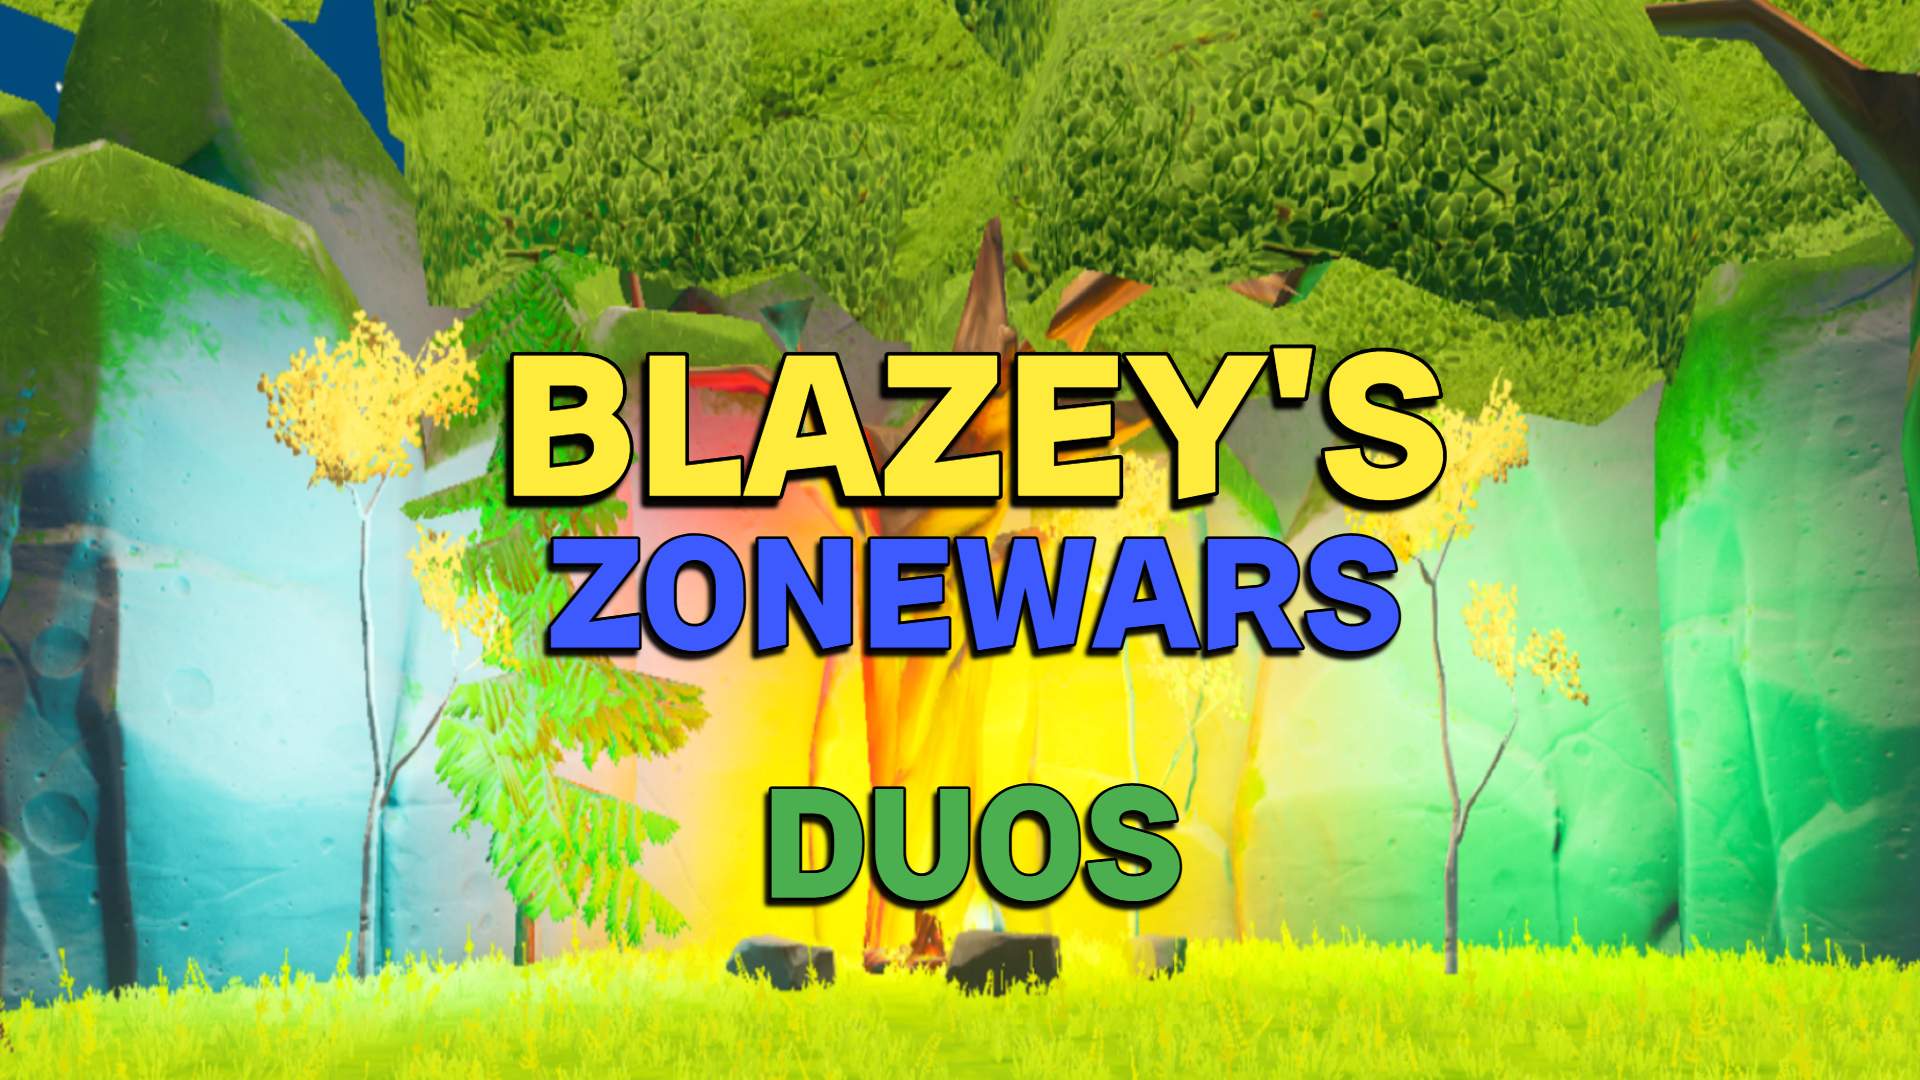 BLAZEY'S ZONEWARS DUOS